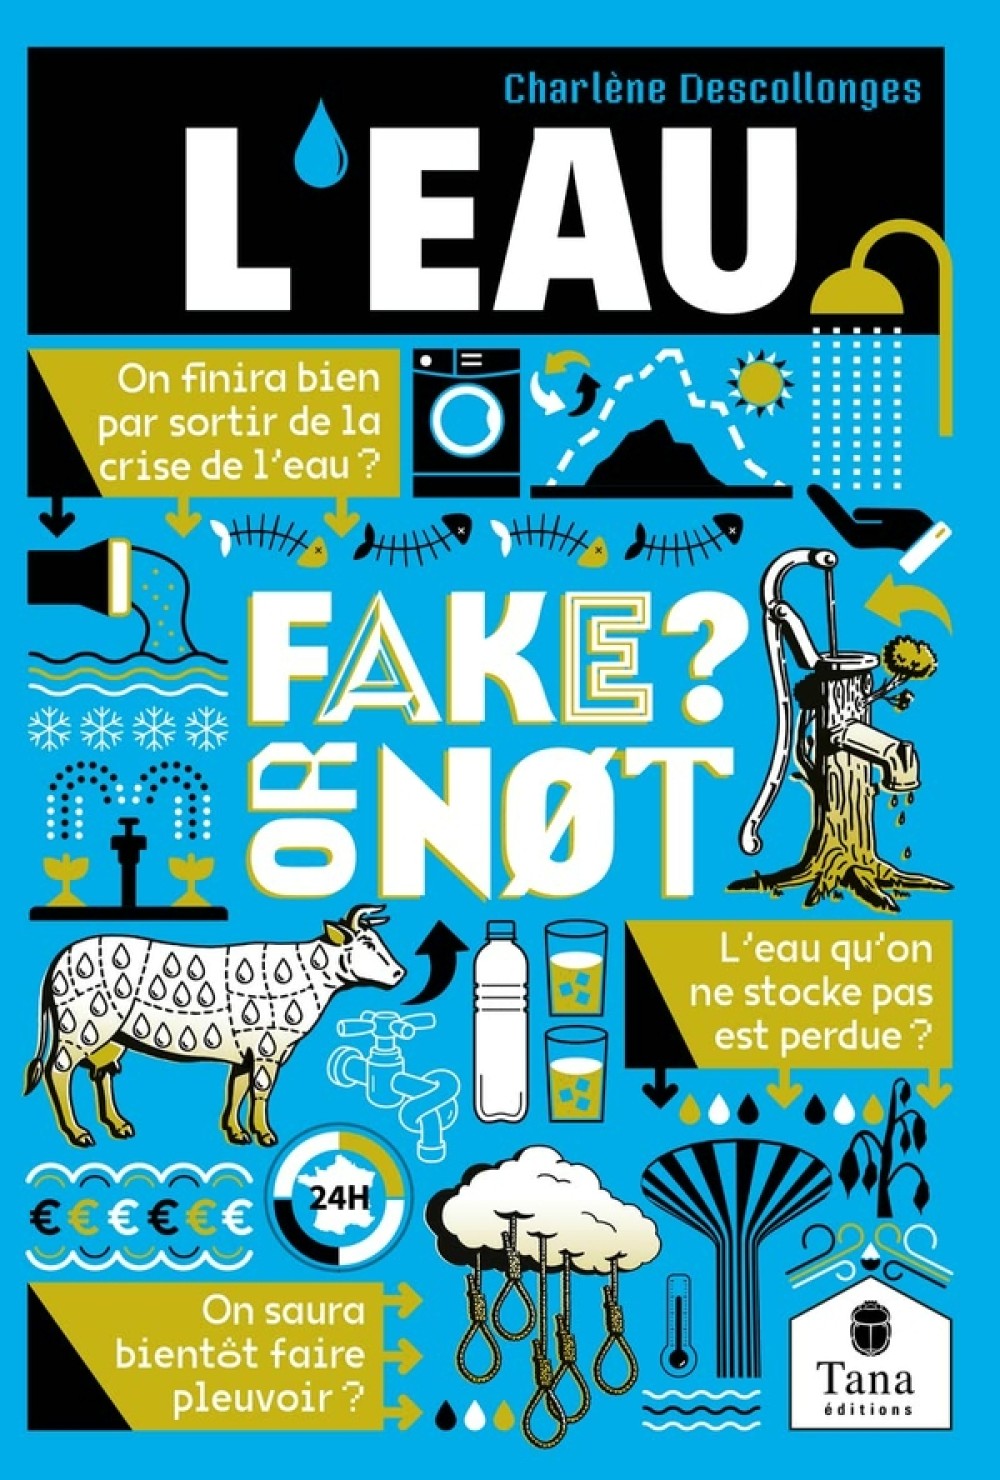 [Publication] L'eau, Fake or not ?